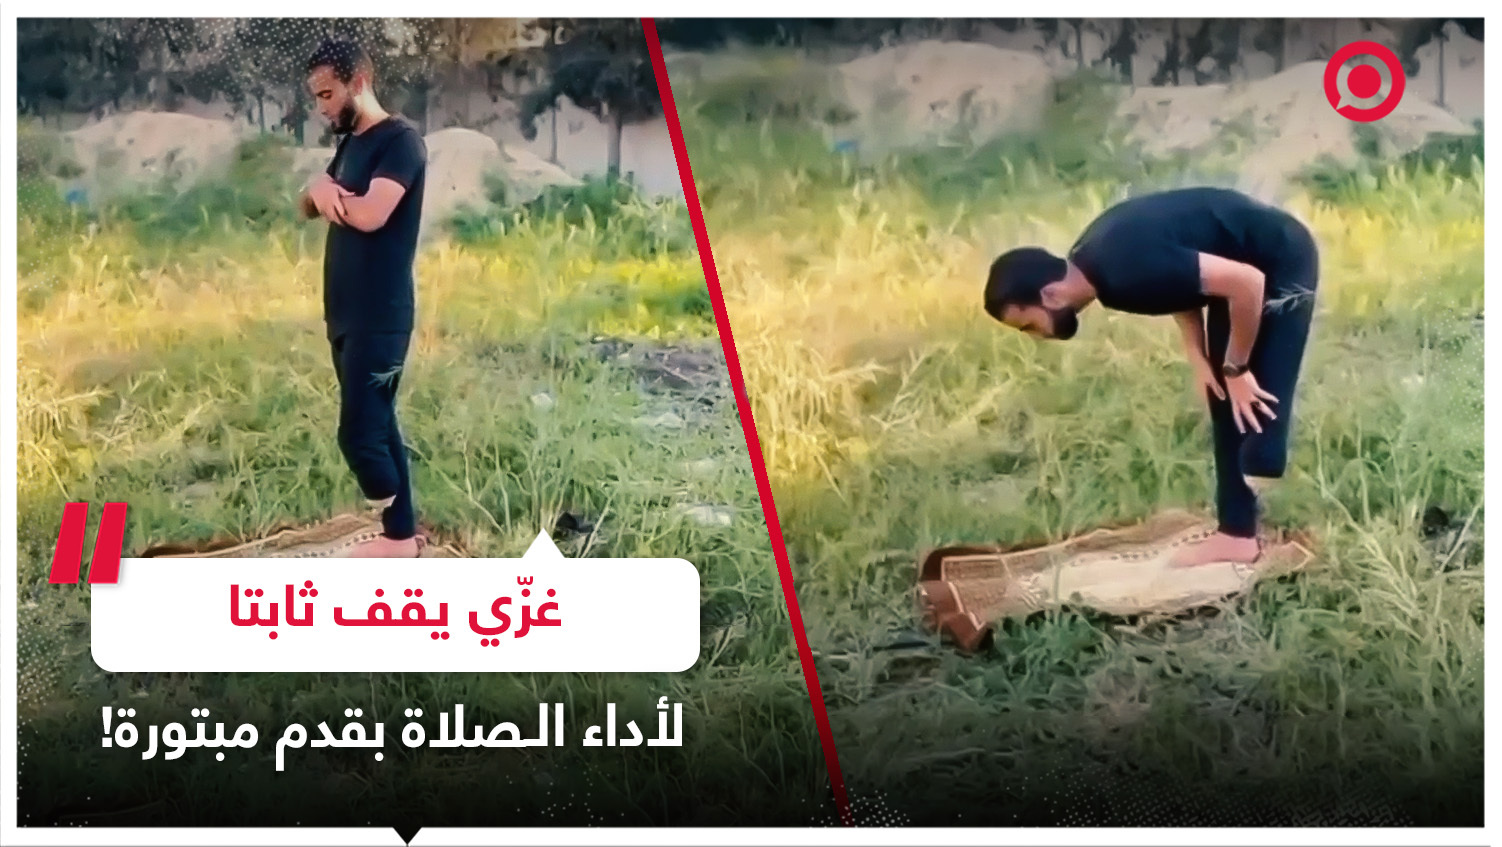 شاب من غزة يؤدي الصلاة بثبات رغم بتر أحد أقدامه عقب استهدافه برصاص إسرائيلي متفجر